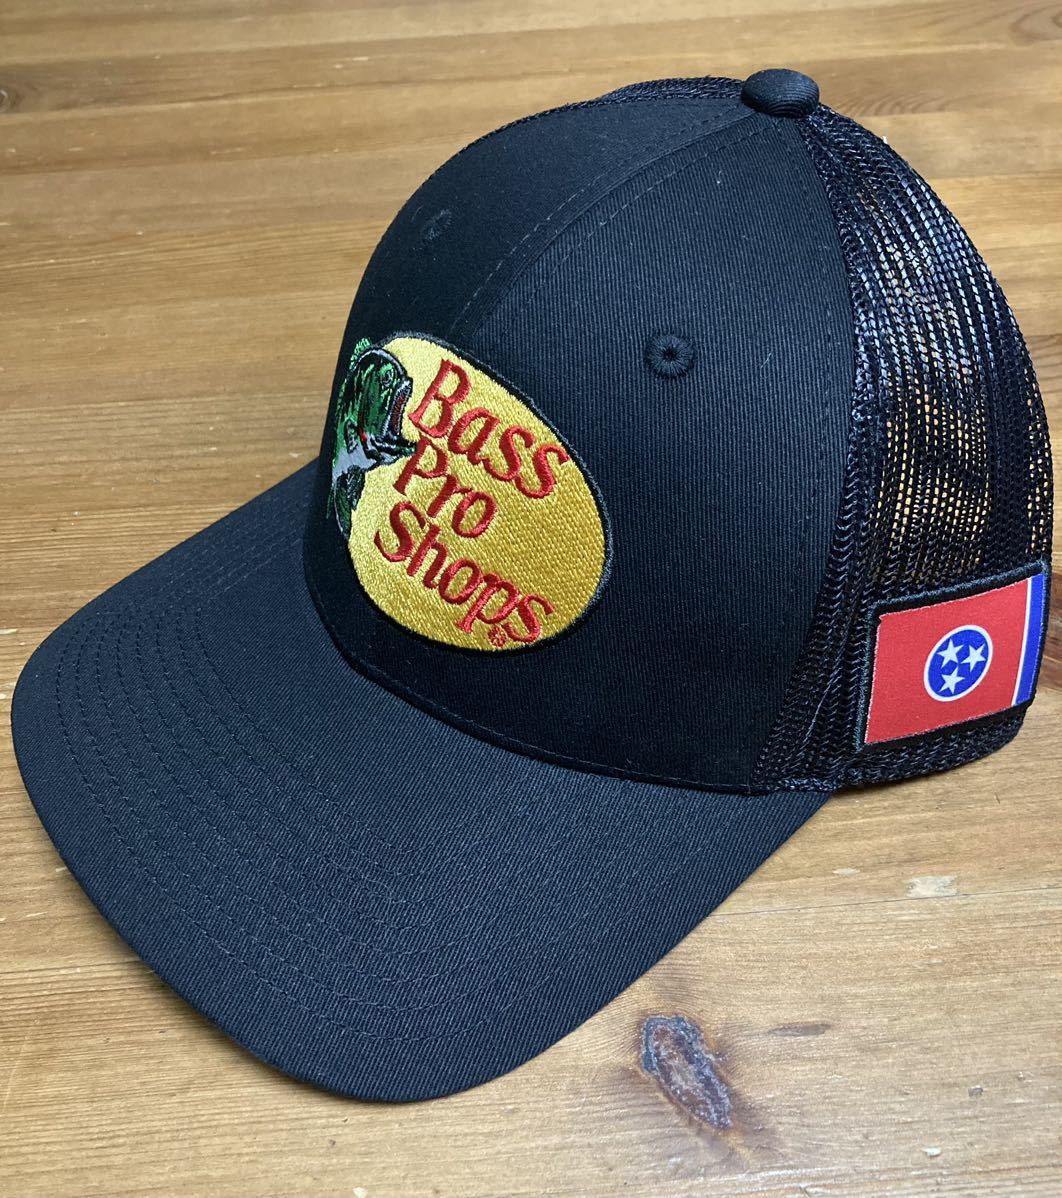 キャップ バスプロショップス bass pro shops cap hat 新品 フラッグ flag cap hat フィッシング 日本未発売 釣り 州旗 Tennessee テネシー_画像3